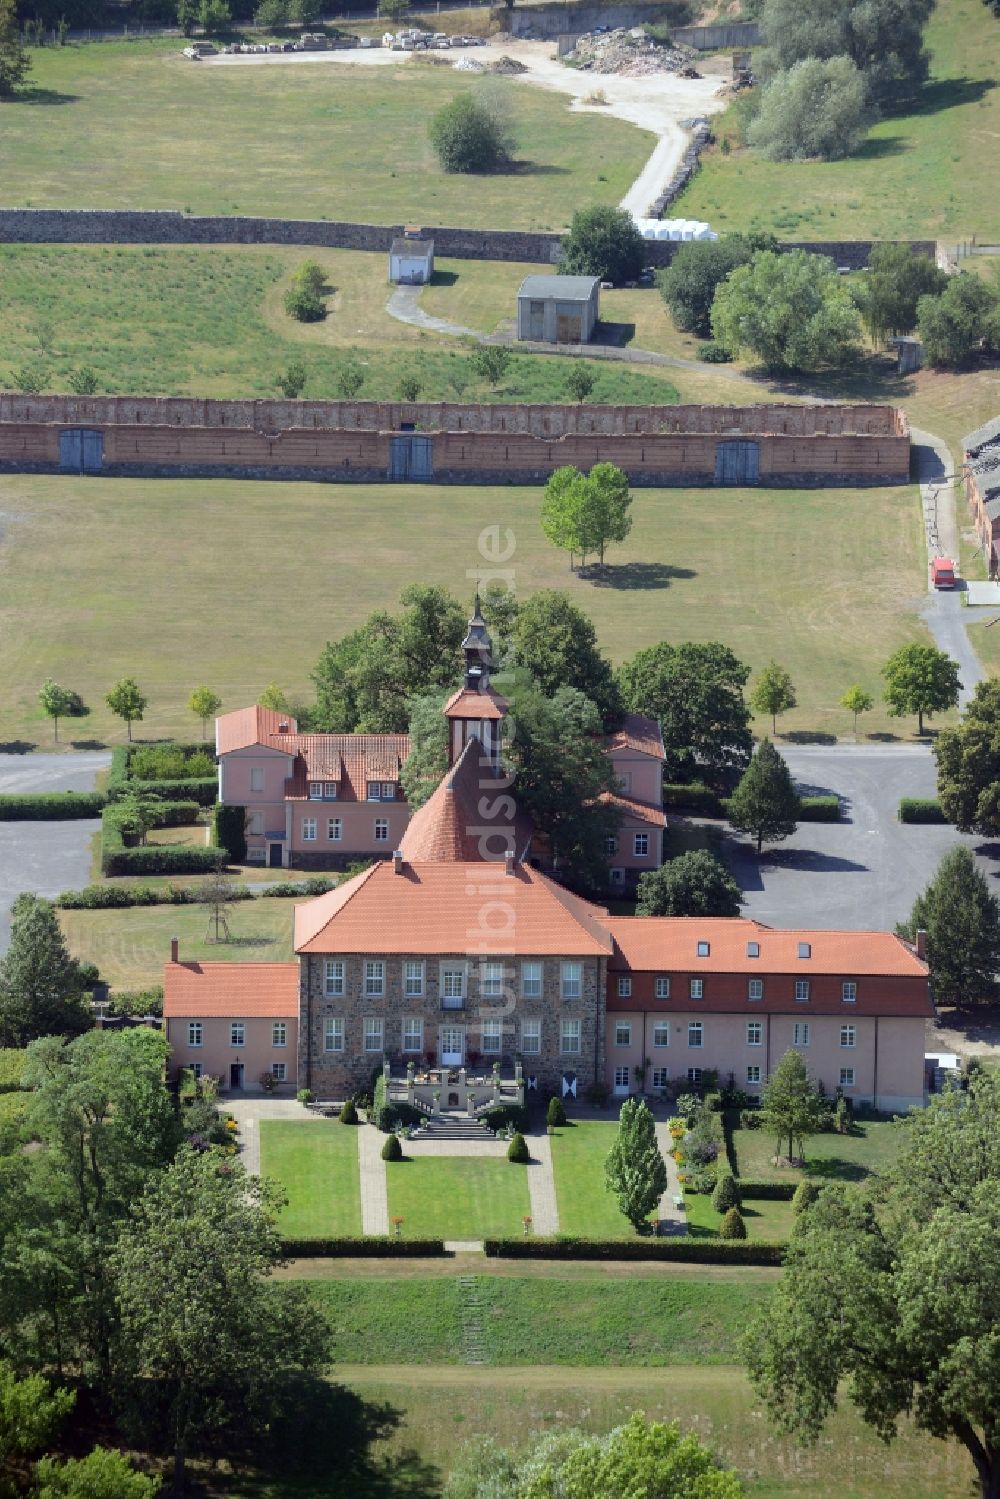 Lietzen von oben - Gebäude und Parkanlagen des Gutshauses und Herrenhauses in Lietzen im Bundesland Brandenburg